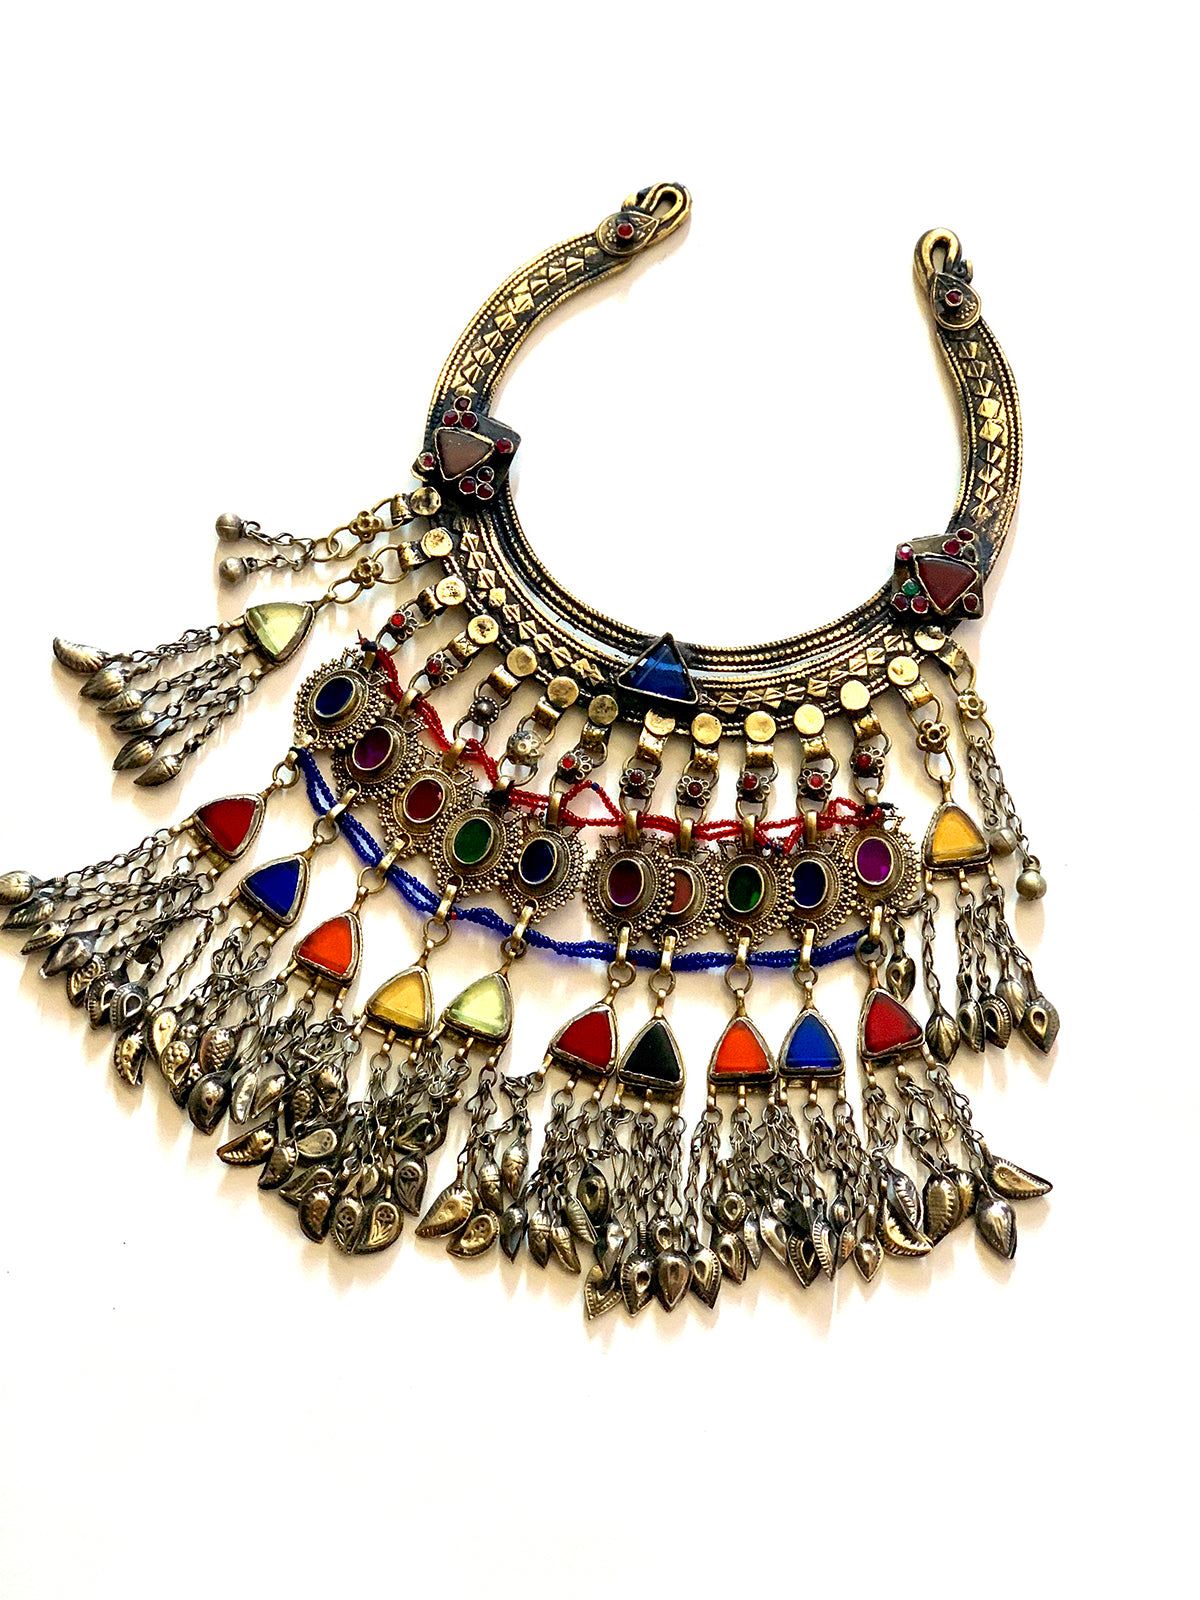 Sita necklace